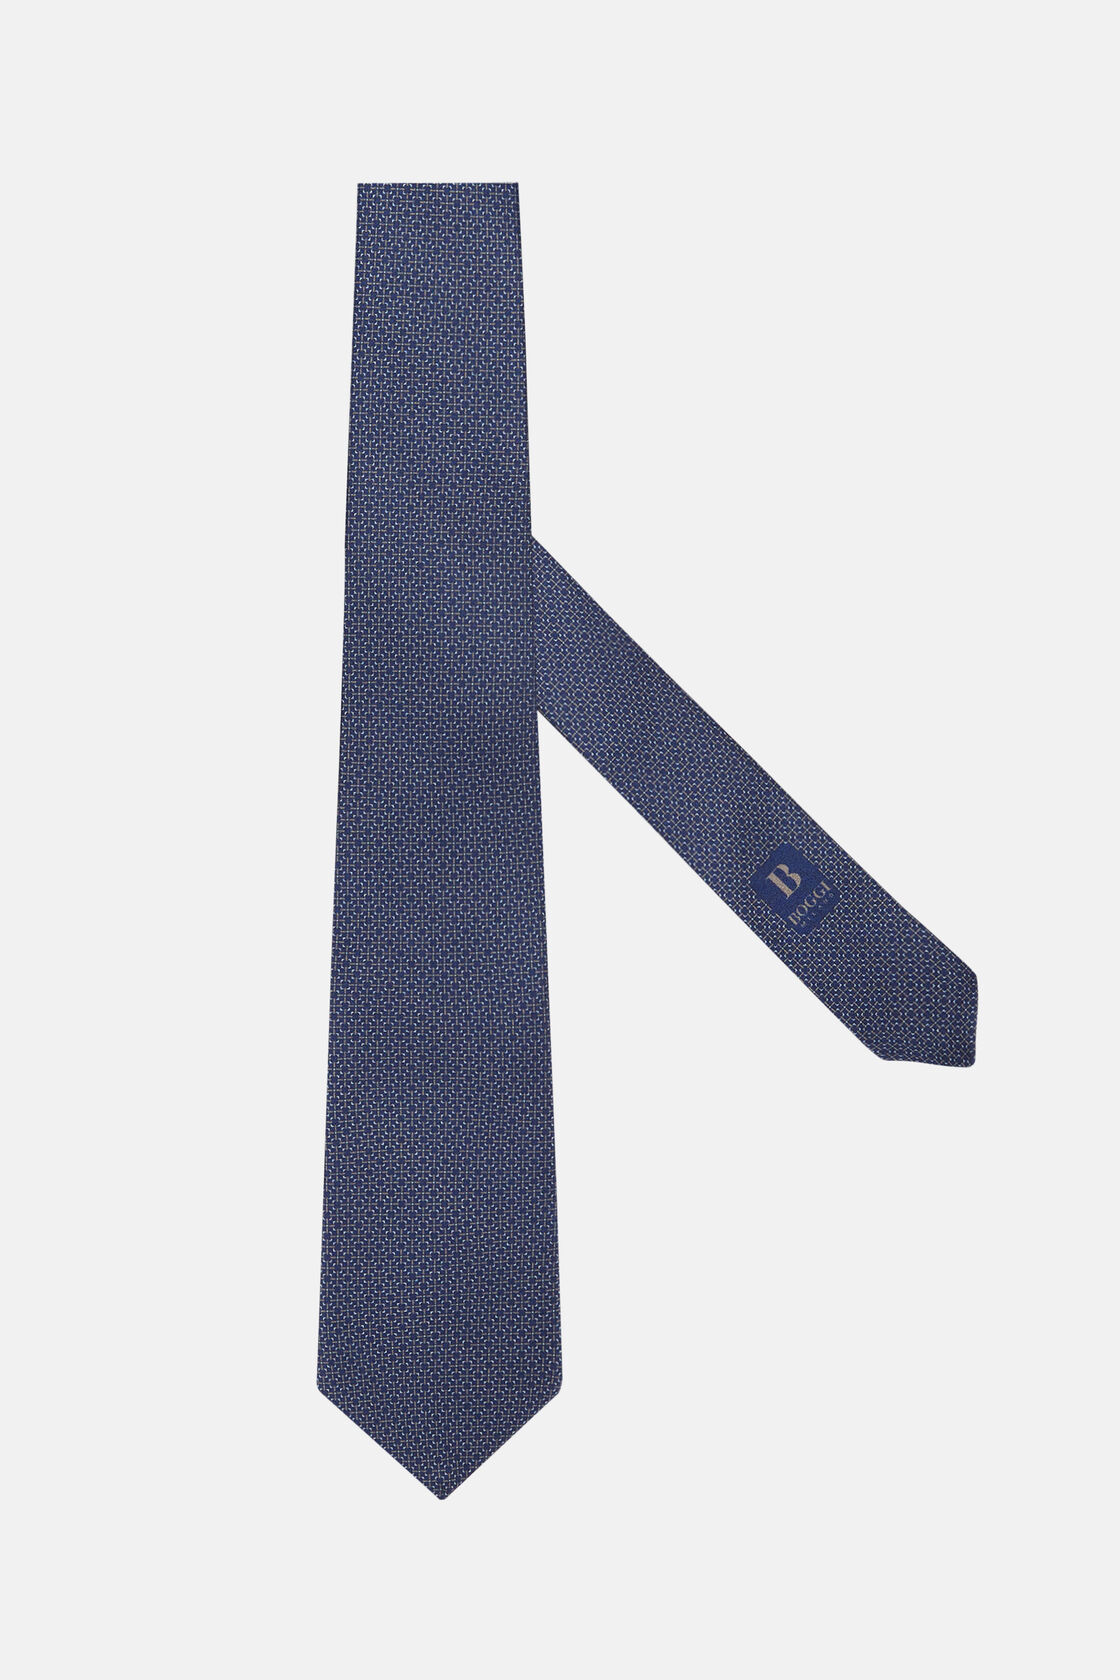 Μεταξωτή γραβάτα με μικροσχέδιο, Brown, hi-res